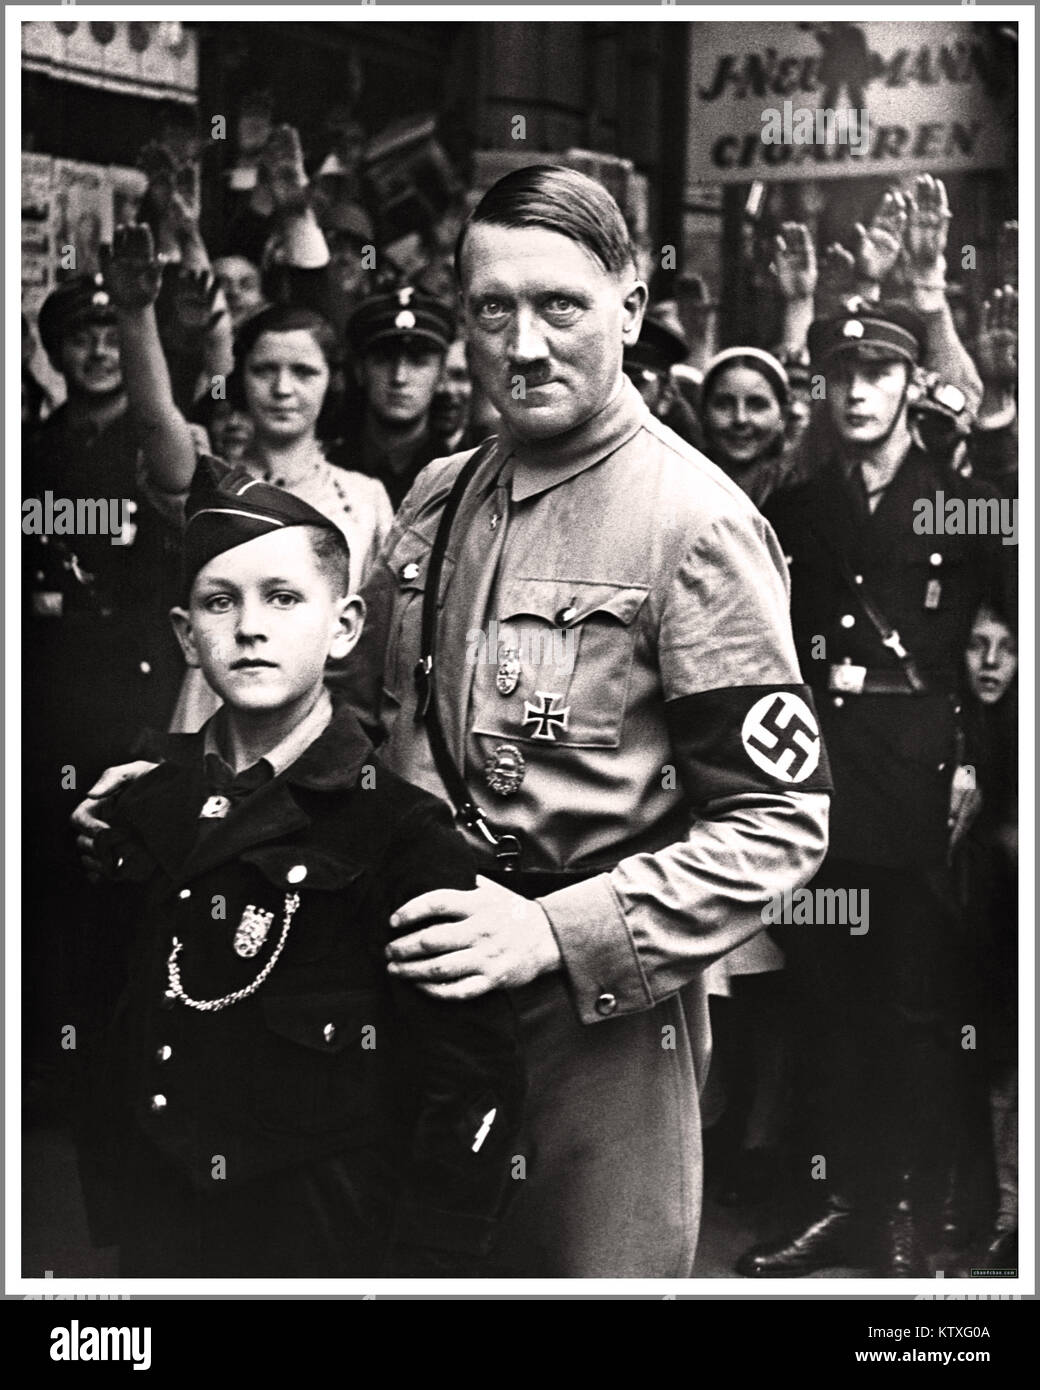 HITLER Germania nazista Propaganda Image 1930 il dittatore nazista Adolf Hitler che indossa l'uniforme NSDAP e la fascia da braccio svastica a Berlino, posando con un'espressione agghiacciante accanto a un giovane membro di 10-12 anni dell'organizzazione Hitler Youth Hitler-Jugend. La folla che saluta Heil Hitler. Foto Stock